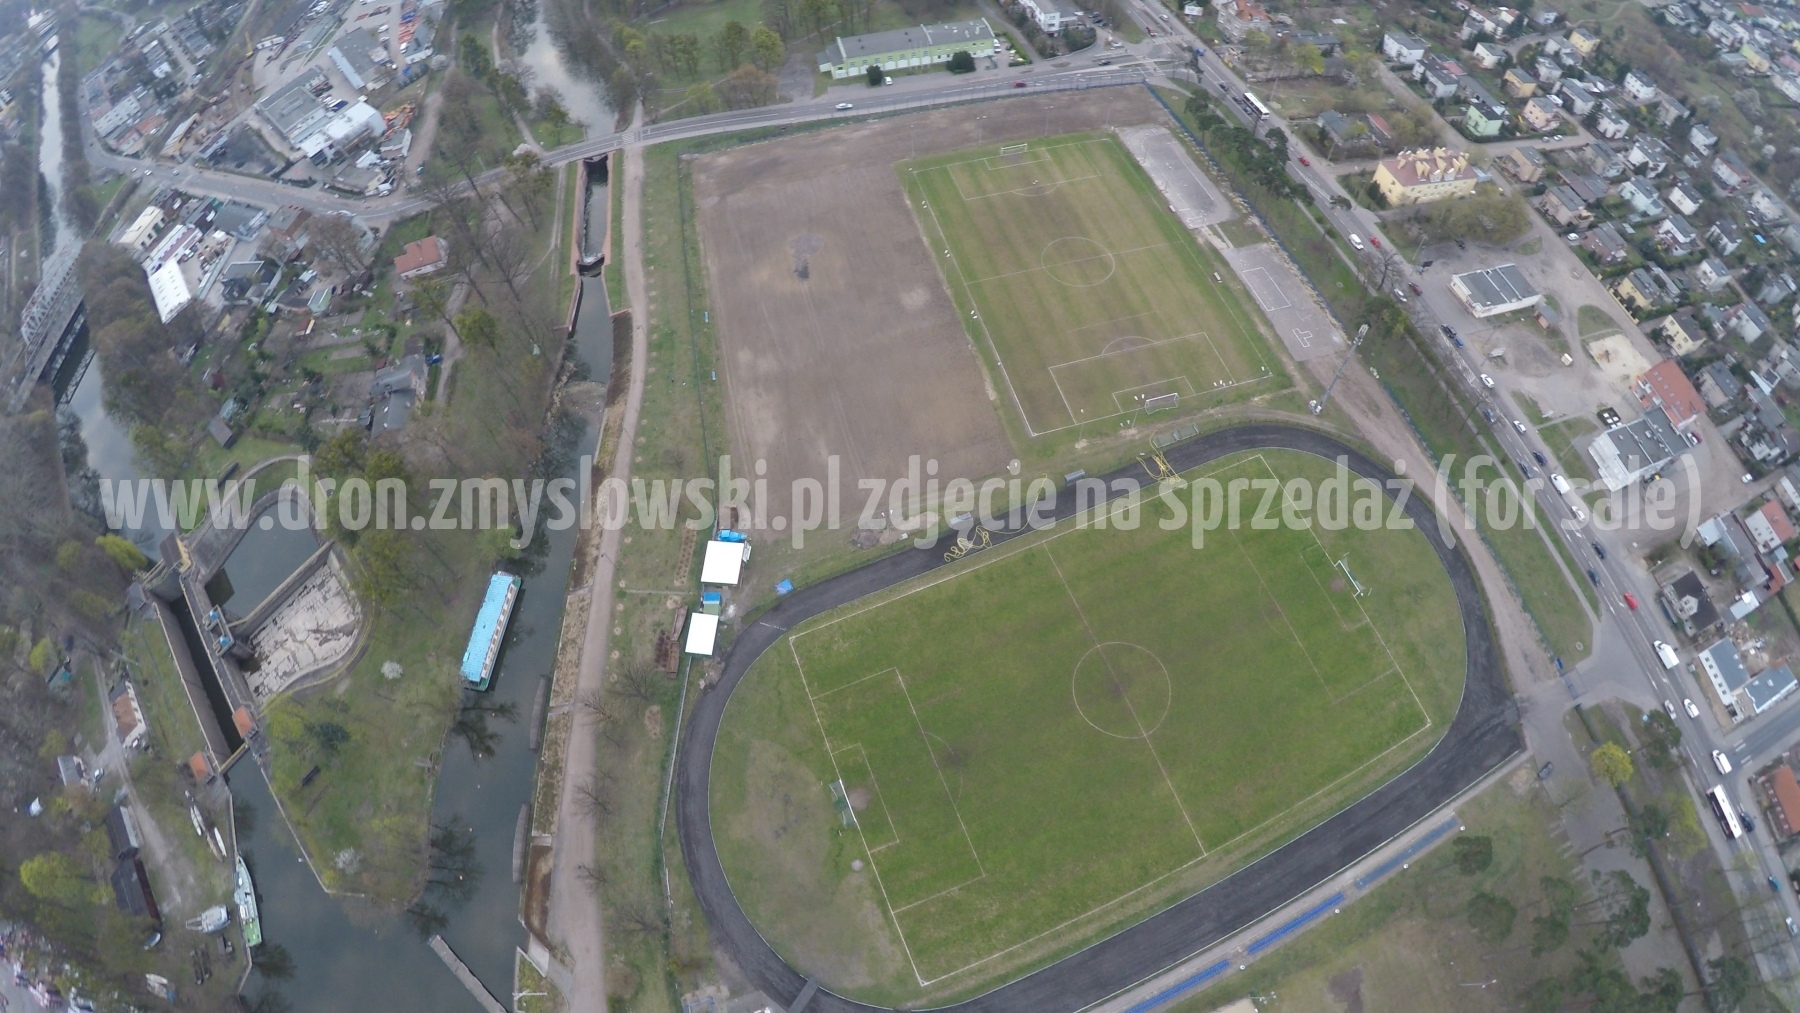 2016-04-12-lot-dronem-nad-stadionem-Gwiazdy-Bydgoszcz-009